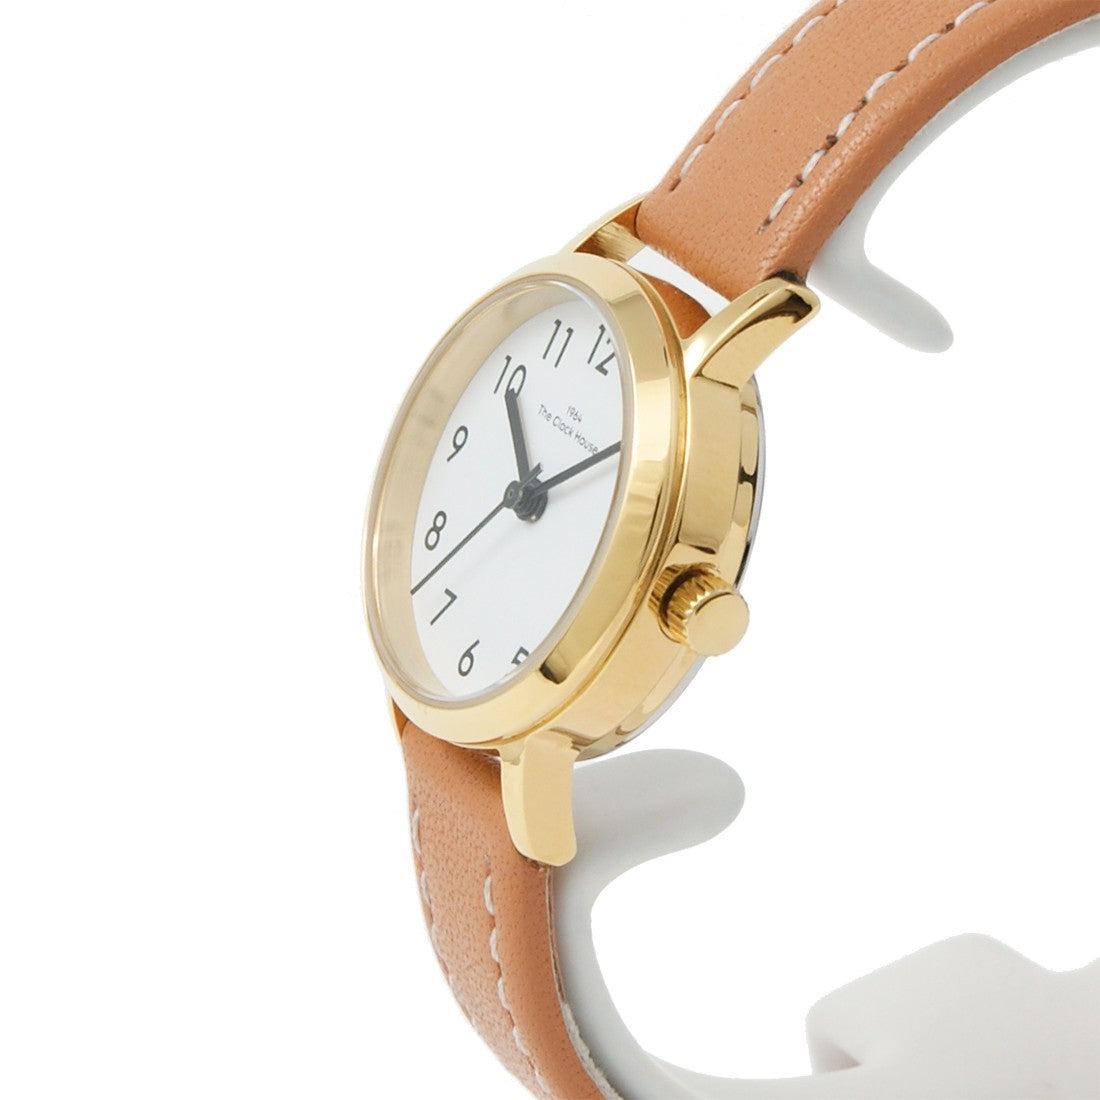 ザ・クロックハウス ナチュラルカジュアル LNC1001-WH3B レディース 腕時計 ソーラー 革ベルト ブラウン ホワイト